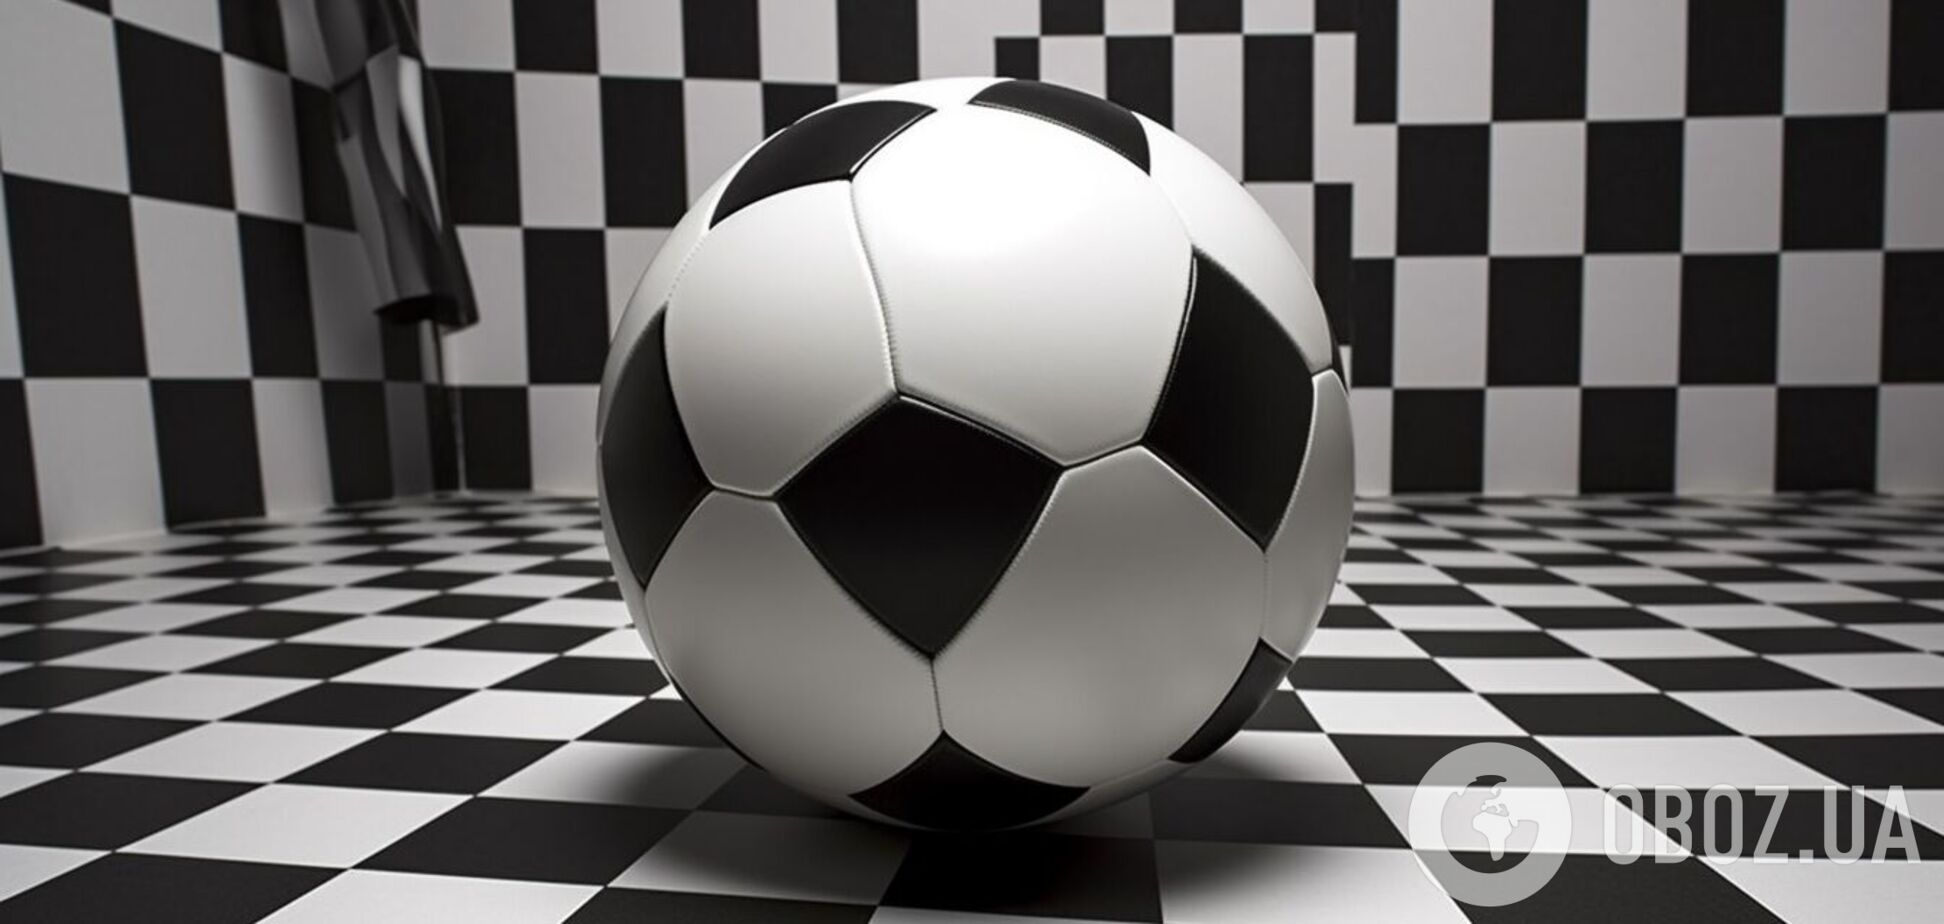 Под силу единицам с самым высоким IQ: головоломка с футбольным мячом